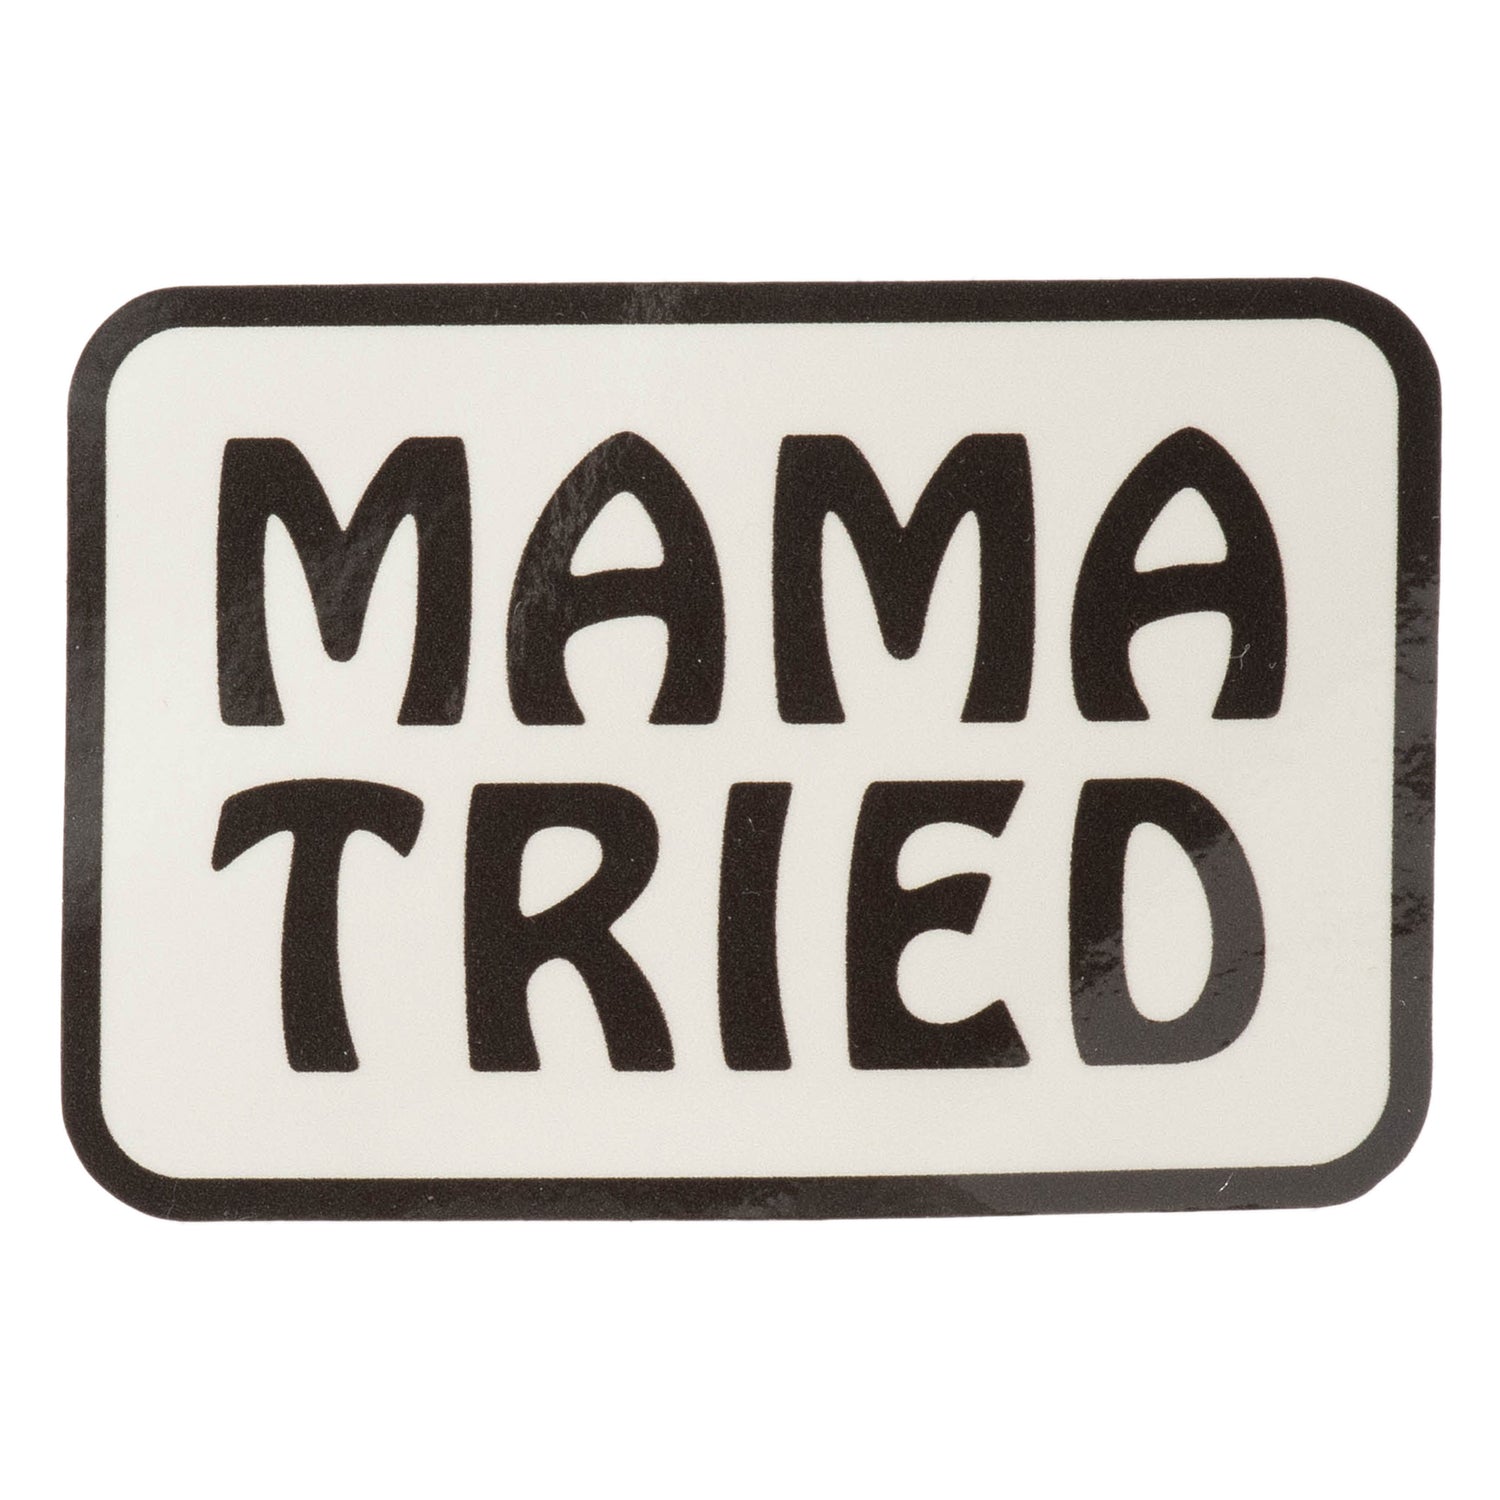 BIKE JERKS Mama Tried Sticker